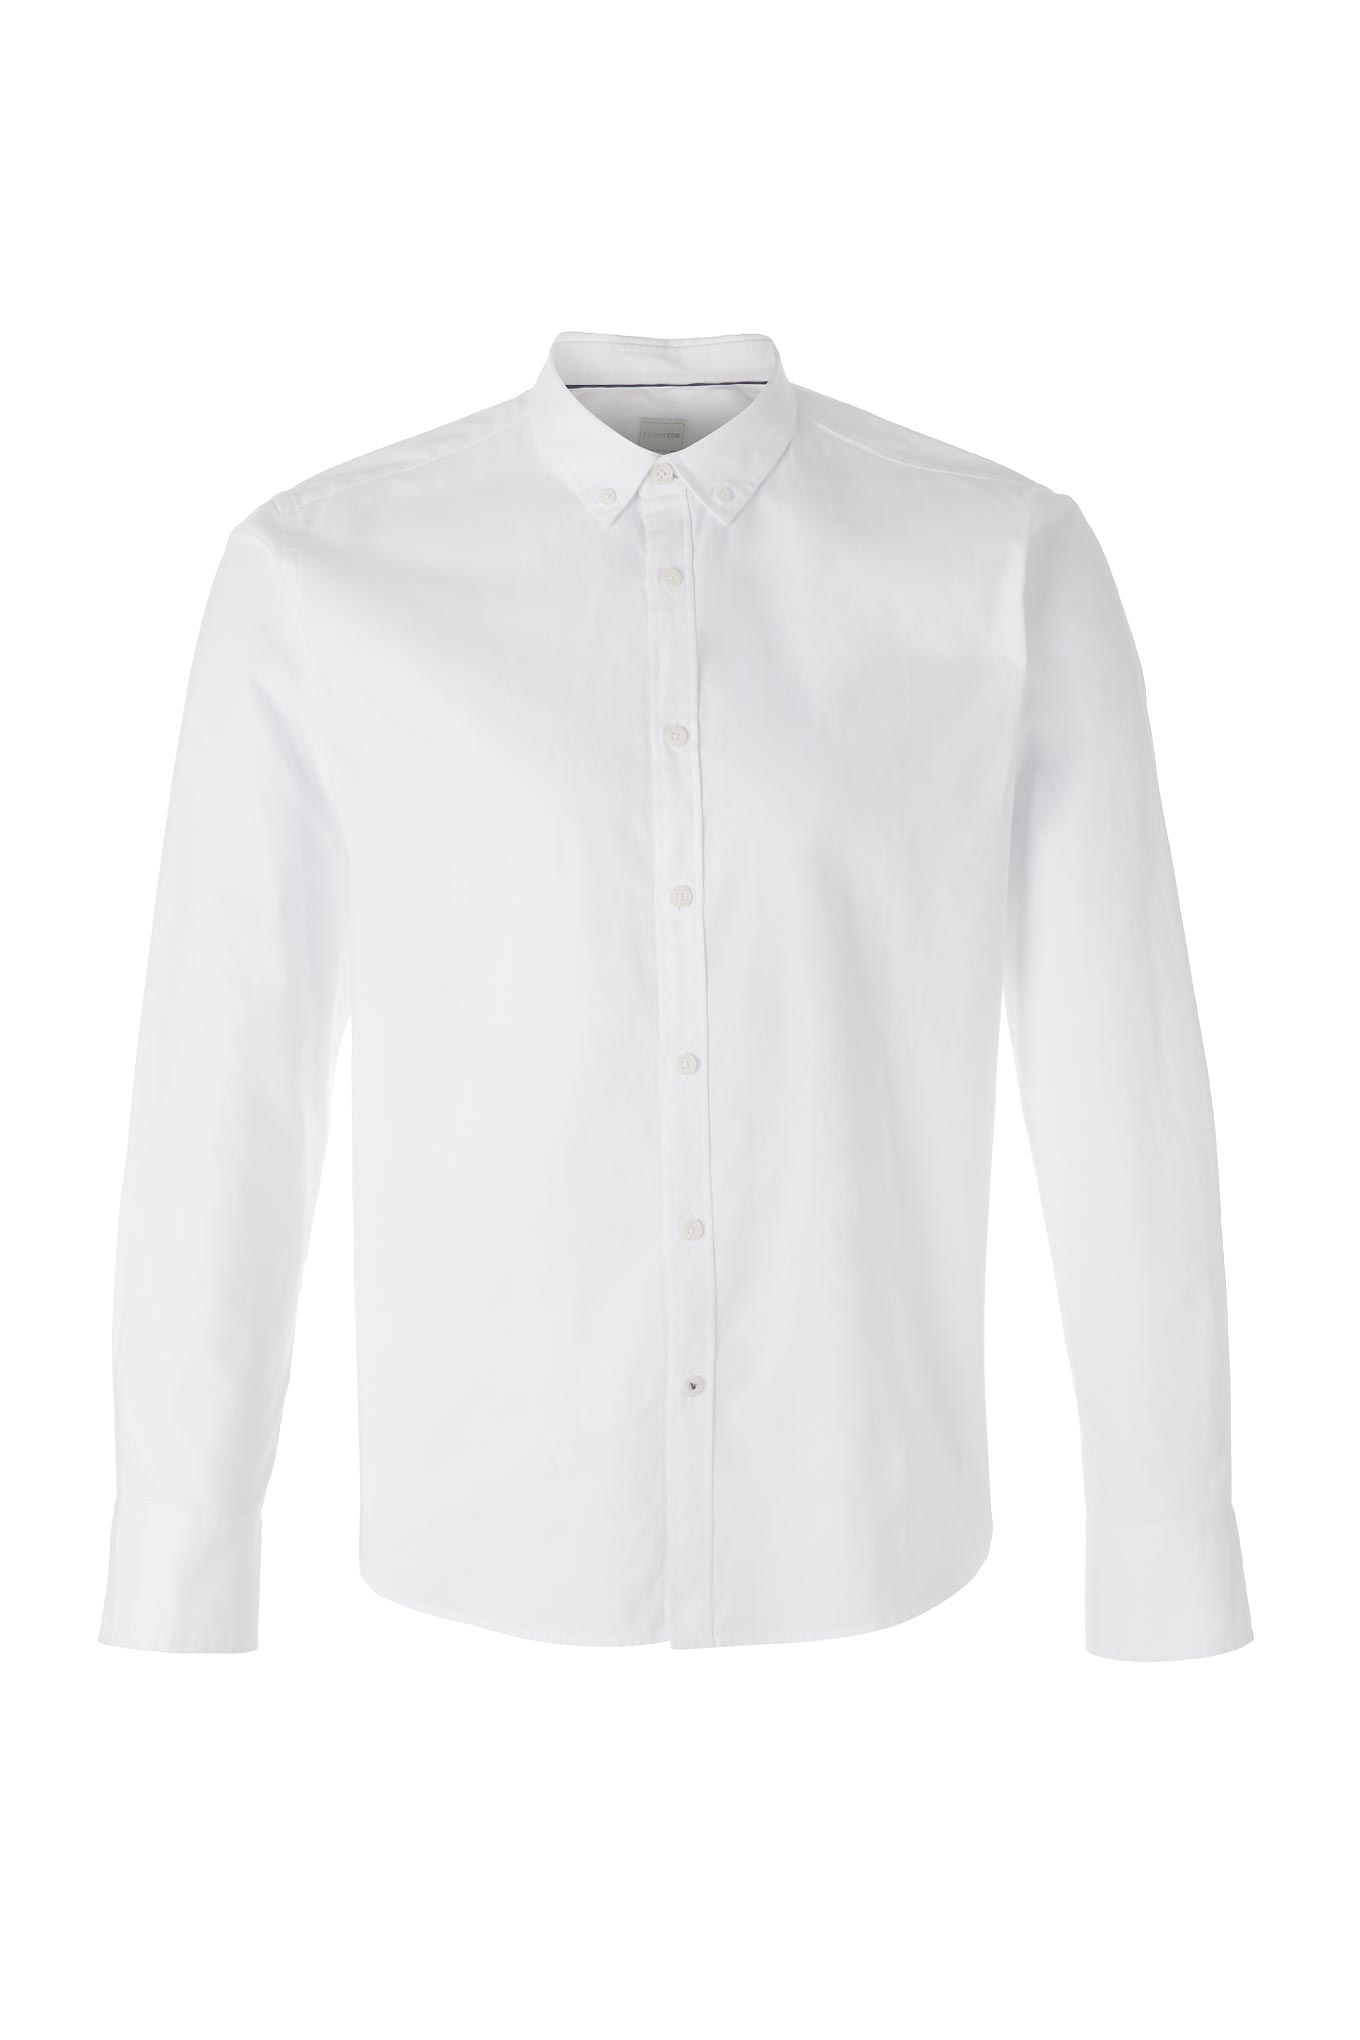 Camisa Branco Sport Homem